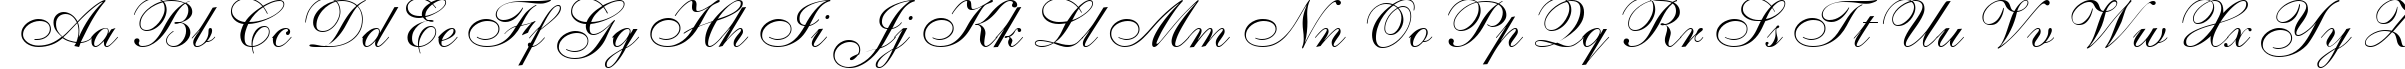 Пример написания английского алфавита шрифтом AnastasiaScript